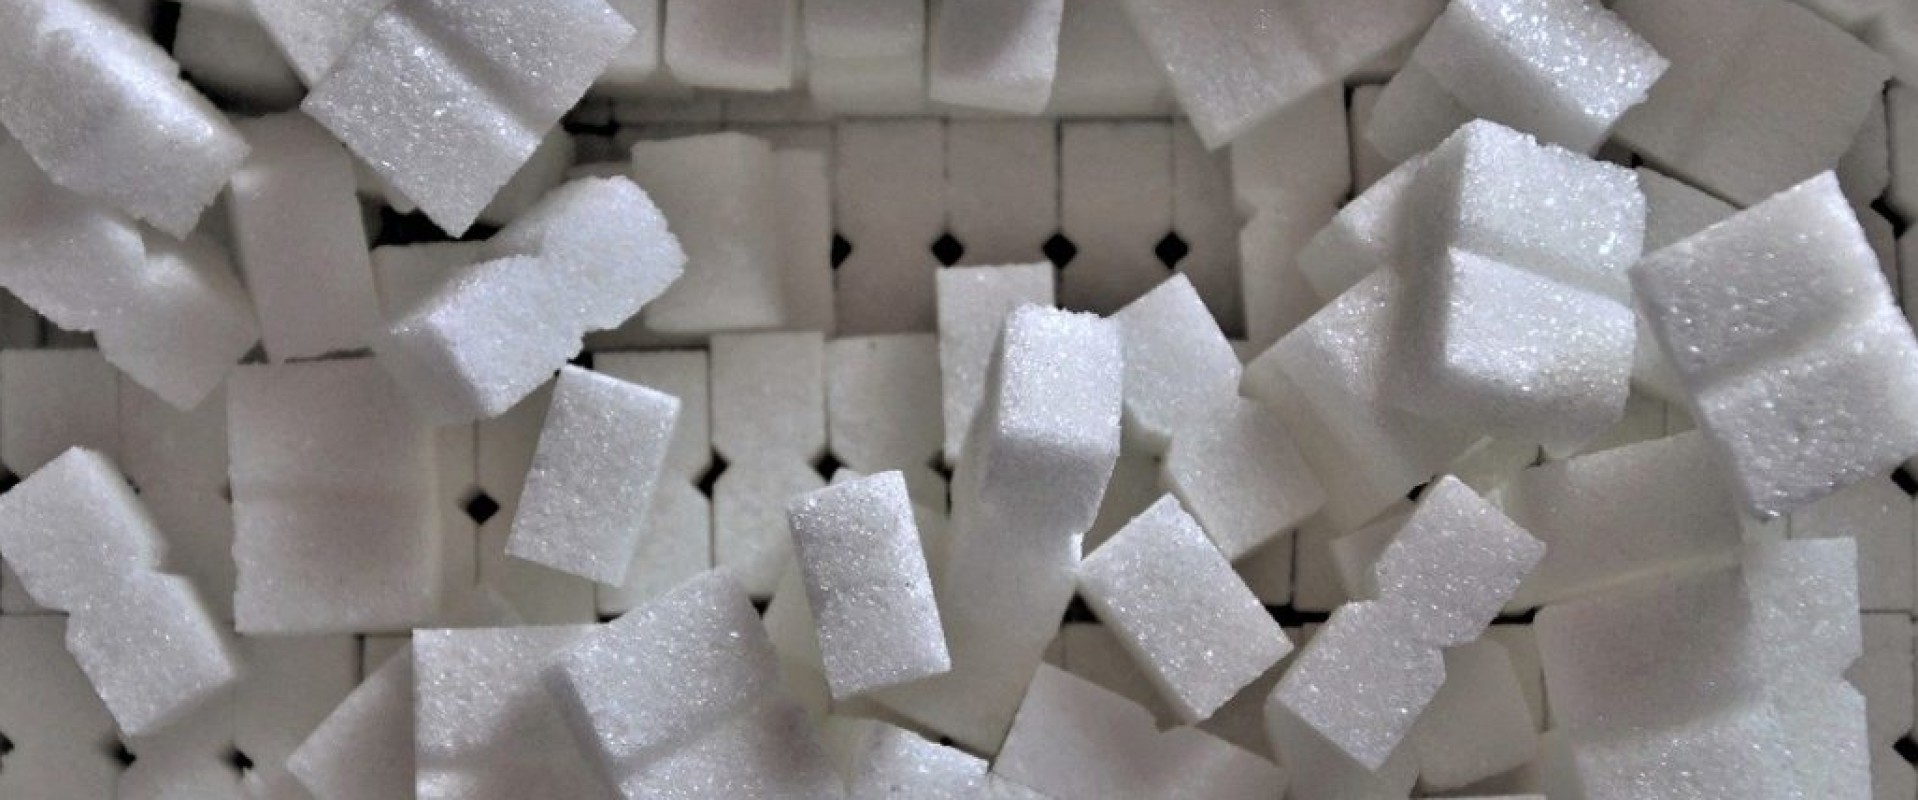 Suiker blijft suiker?